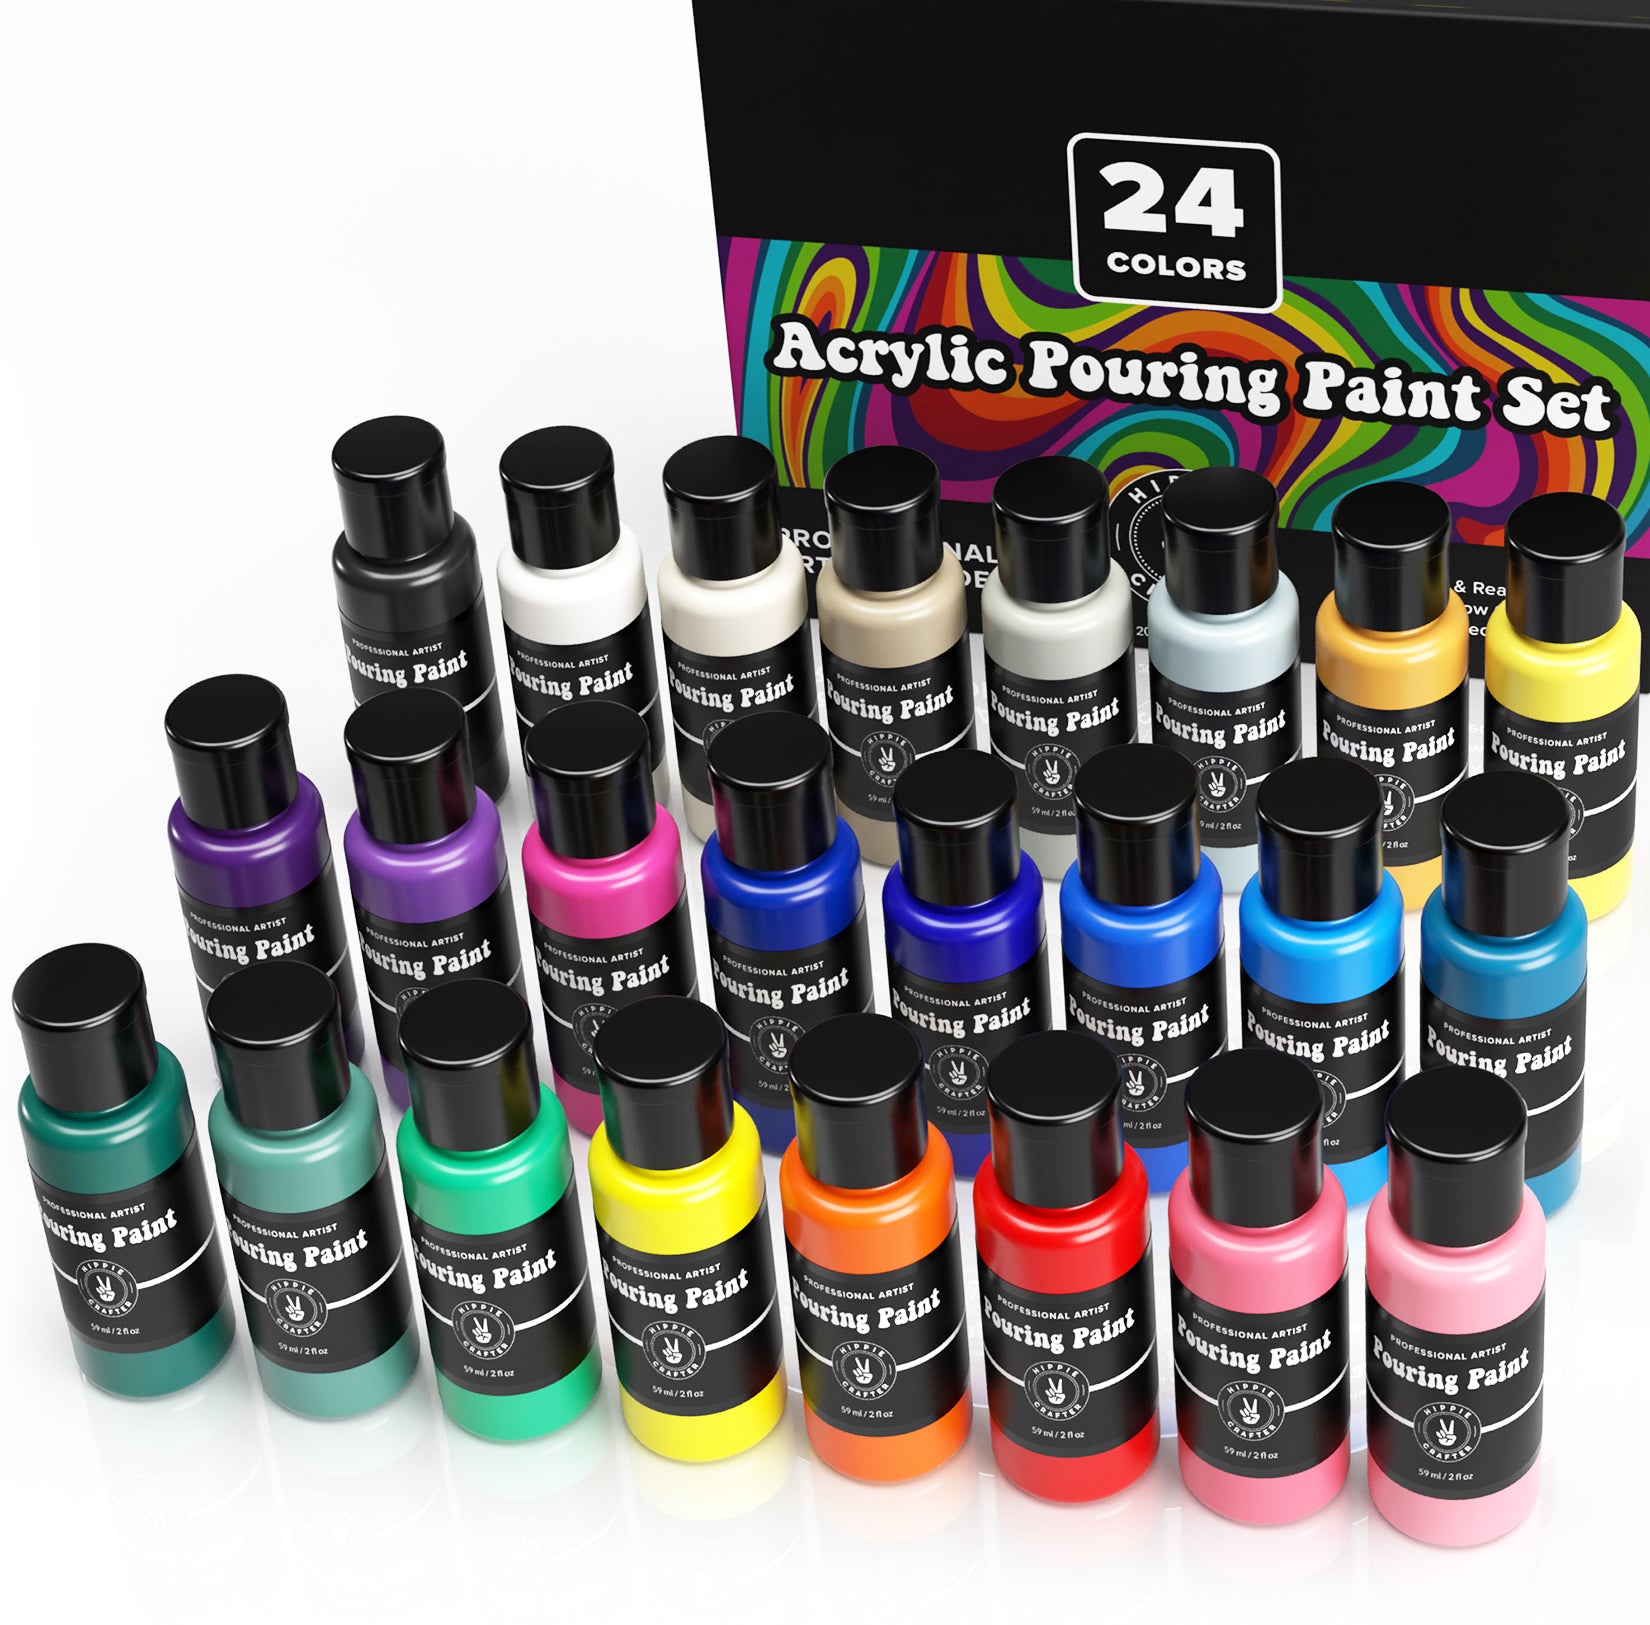 Colorations Oil Pastels, 20 Colors - 24 Packs